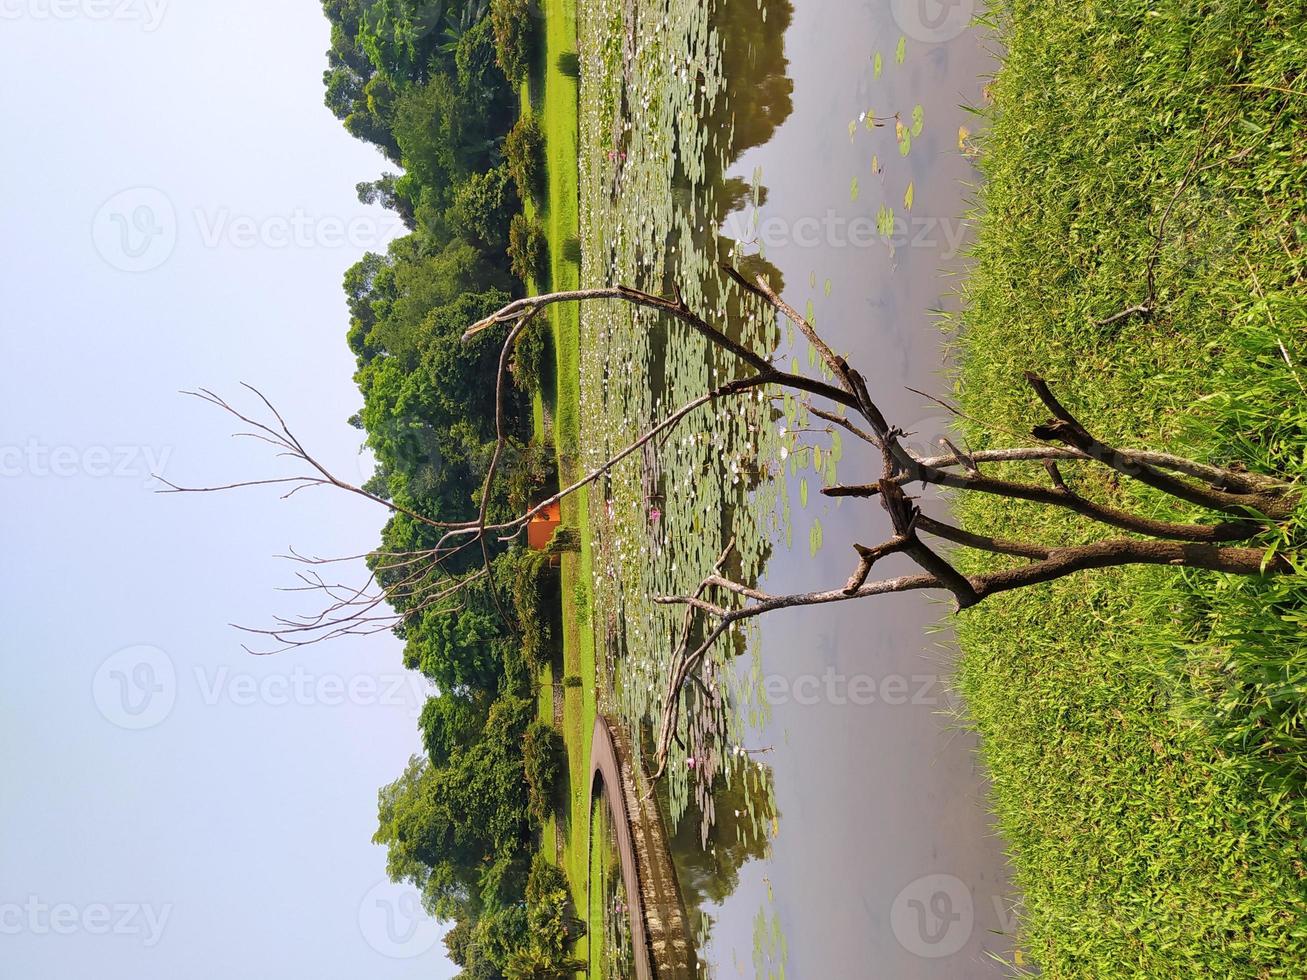 caules de árvores mortas devido ao aquecimento global nos arredores do lago de lótus foto